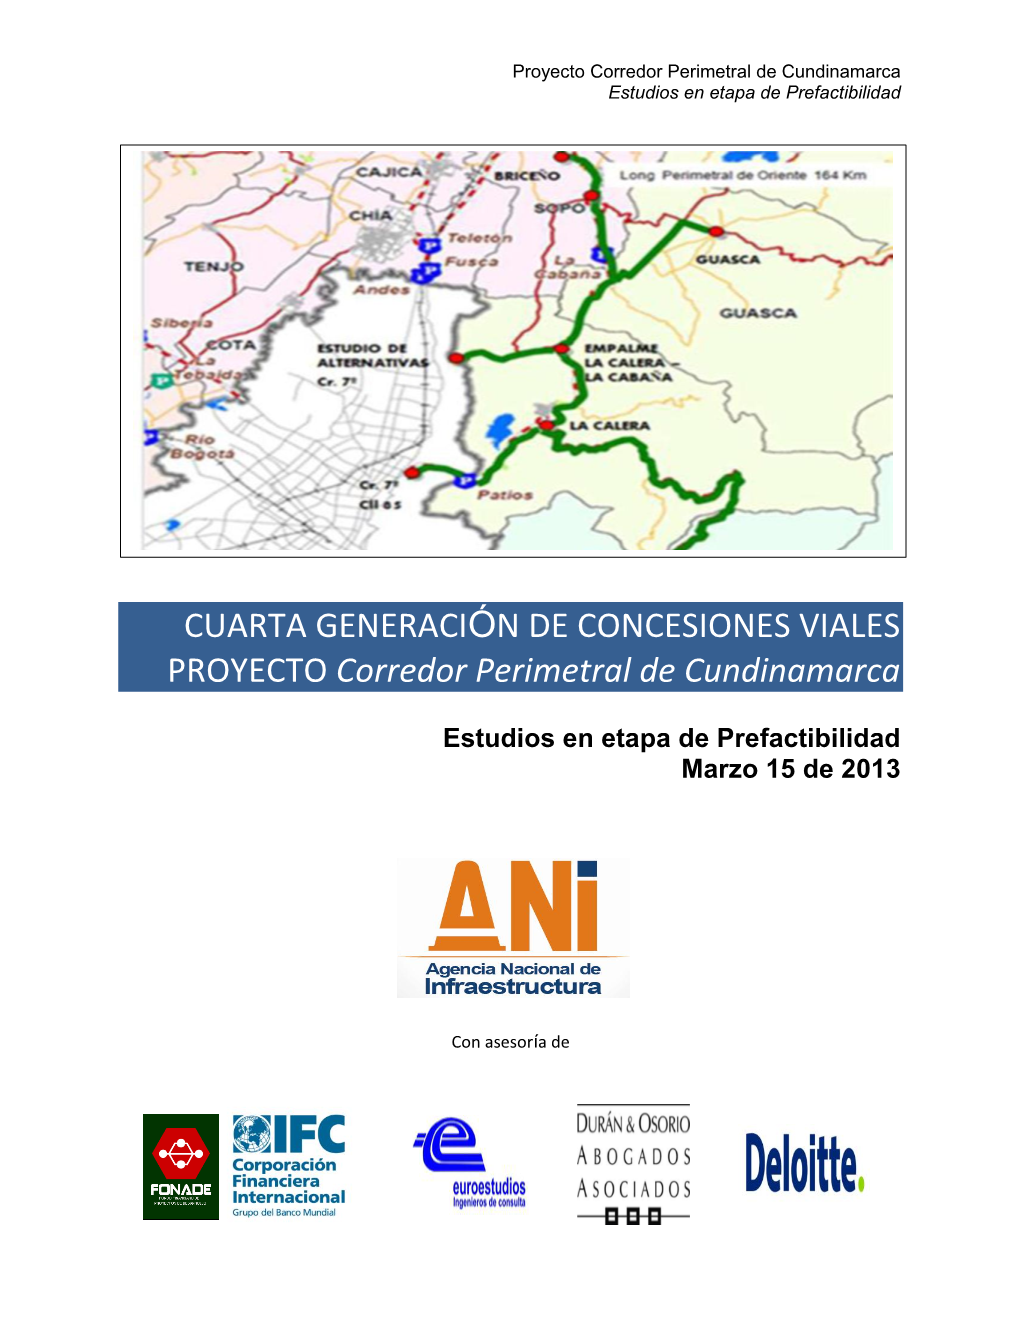 CUARTA GENERACIÓN DE CONCESIONES VIALES PROYECTO Corredor Perimetral De Cundinamarca